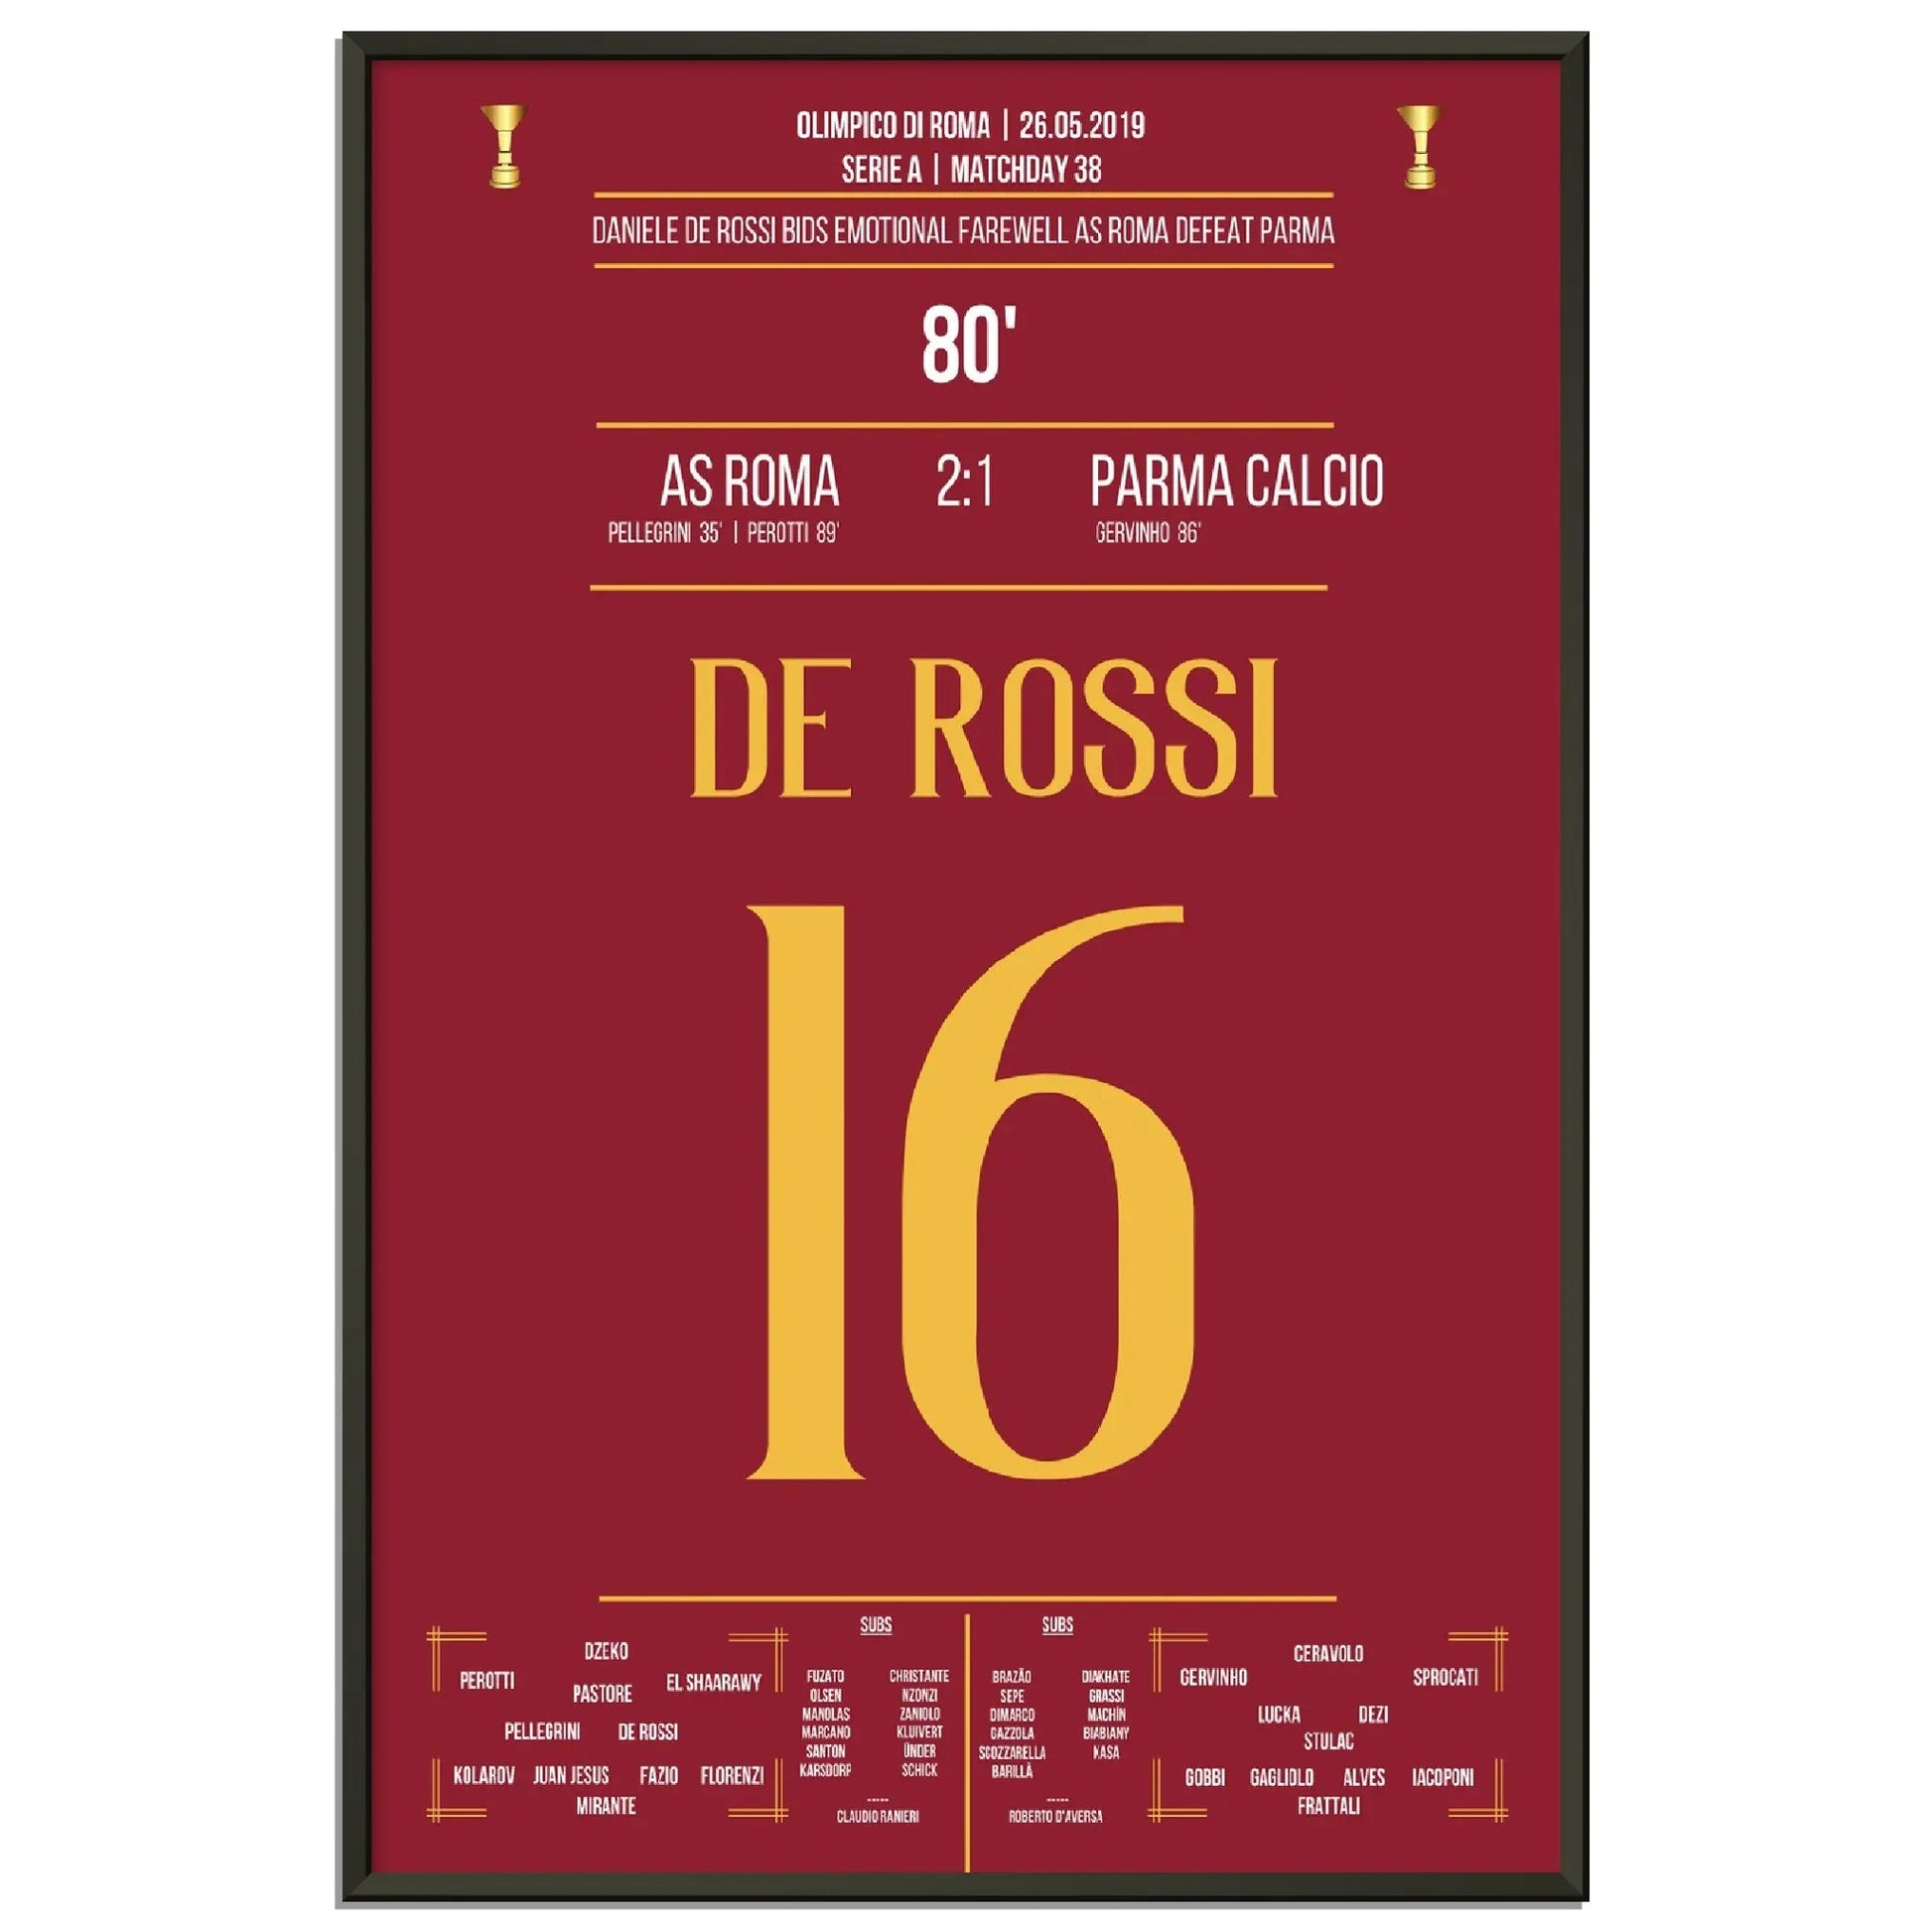 Der emotionale Abschied von Roma-Legende Daniele De Rossi 2019 